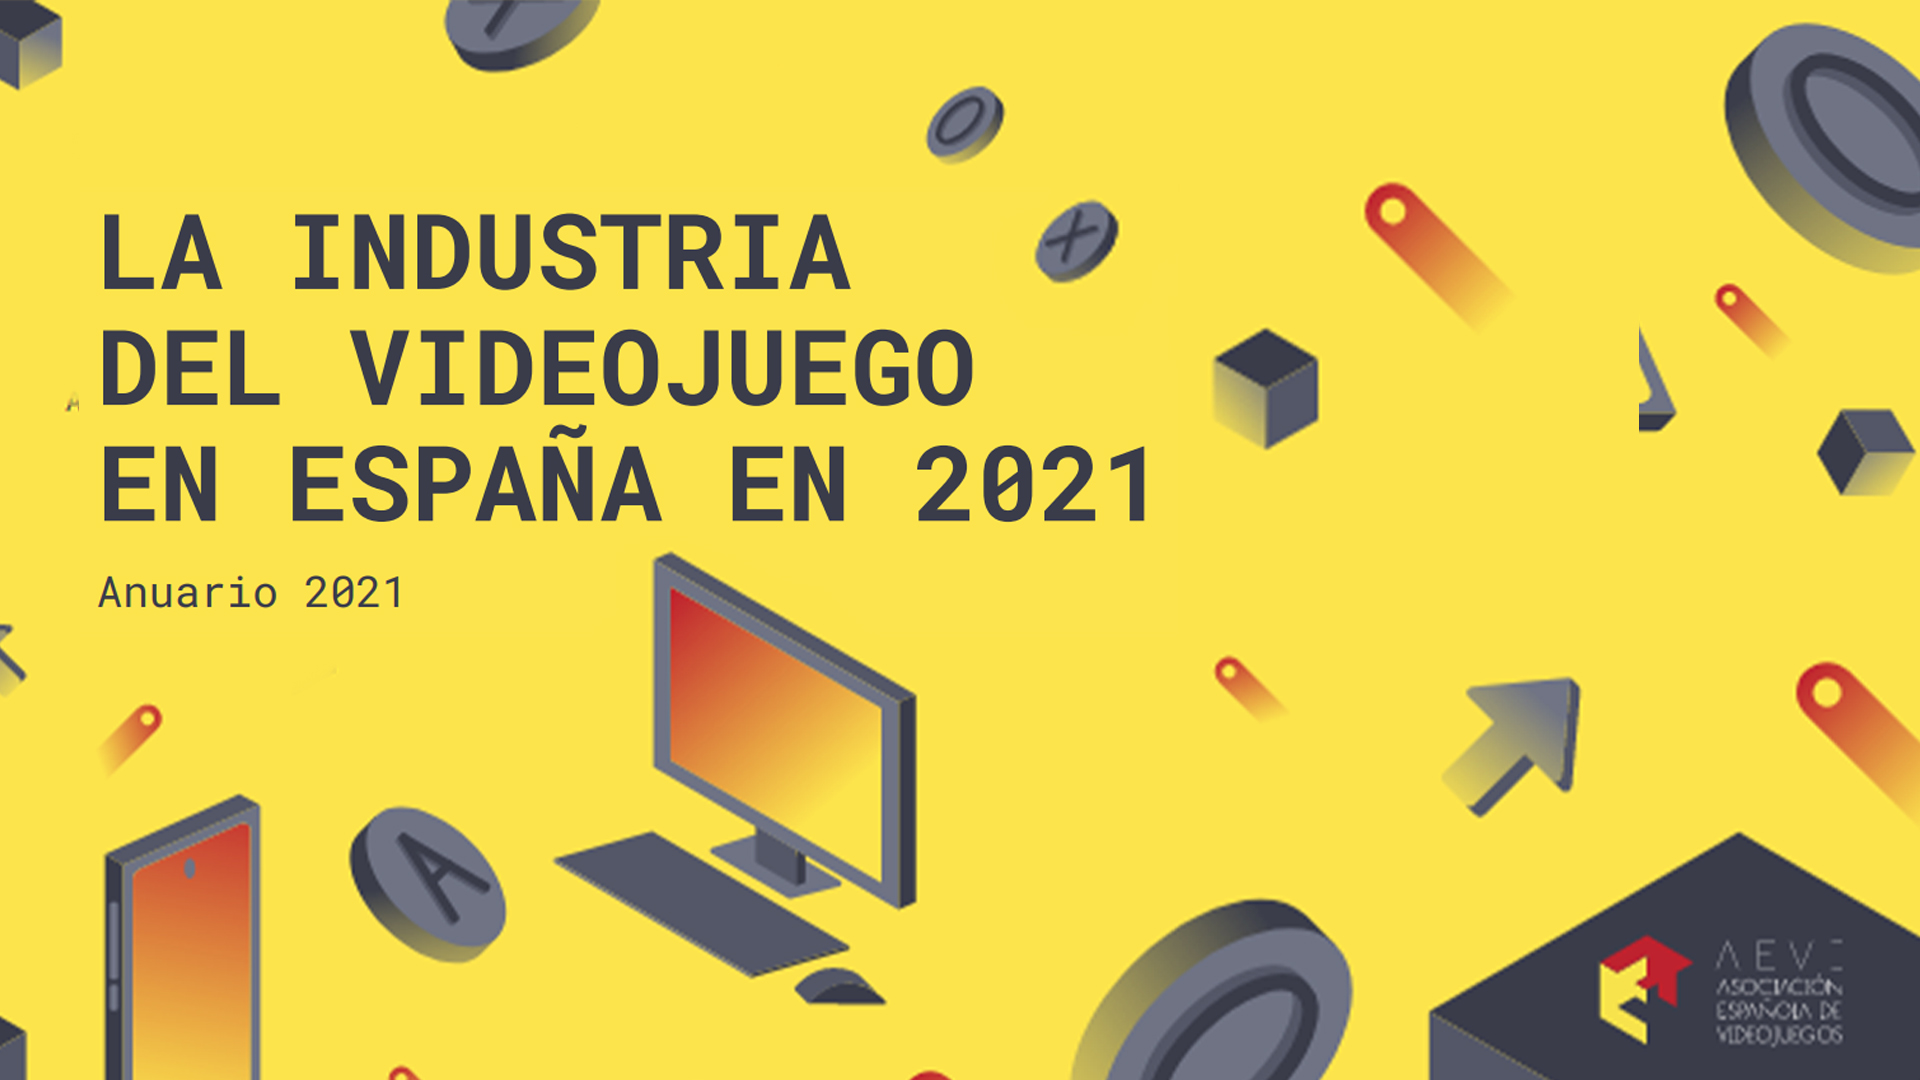 La industria del videojuego en España sigue creciendo – AEVI 2021